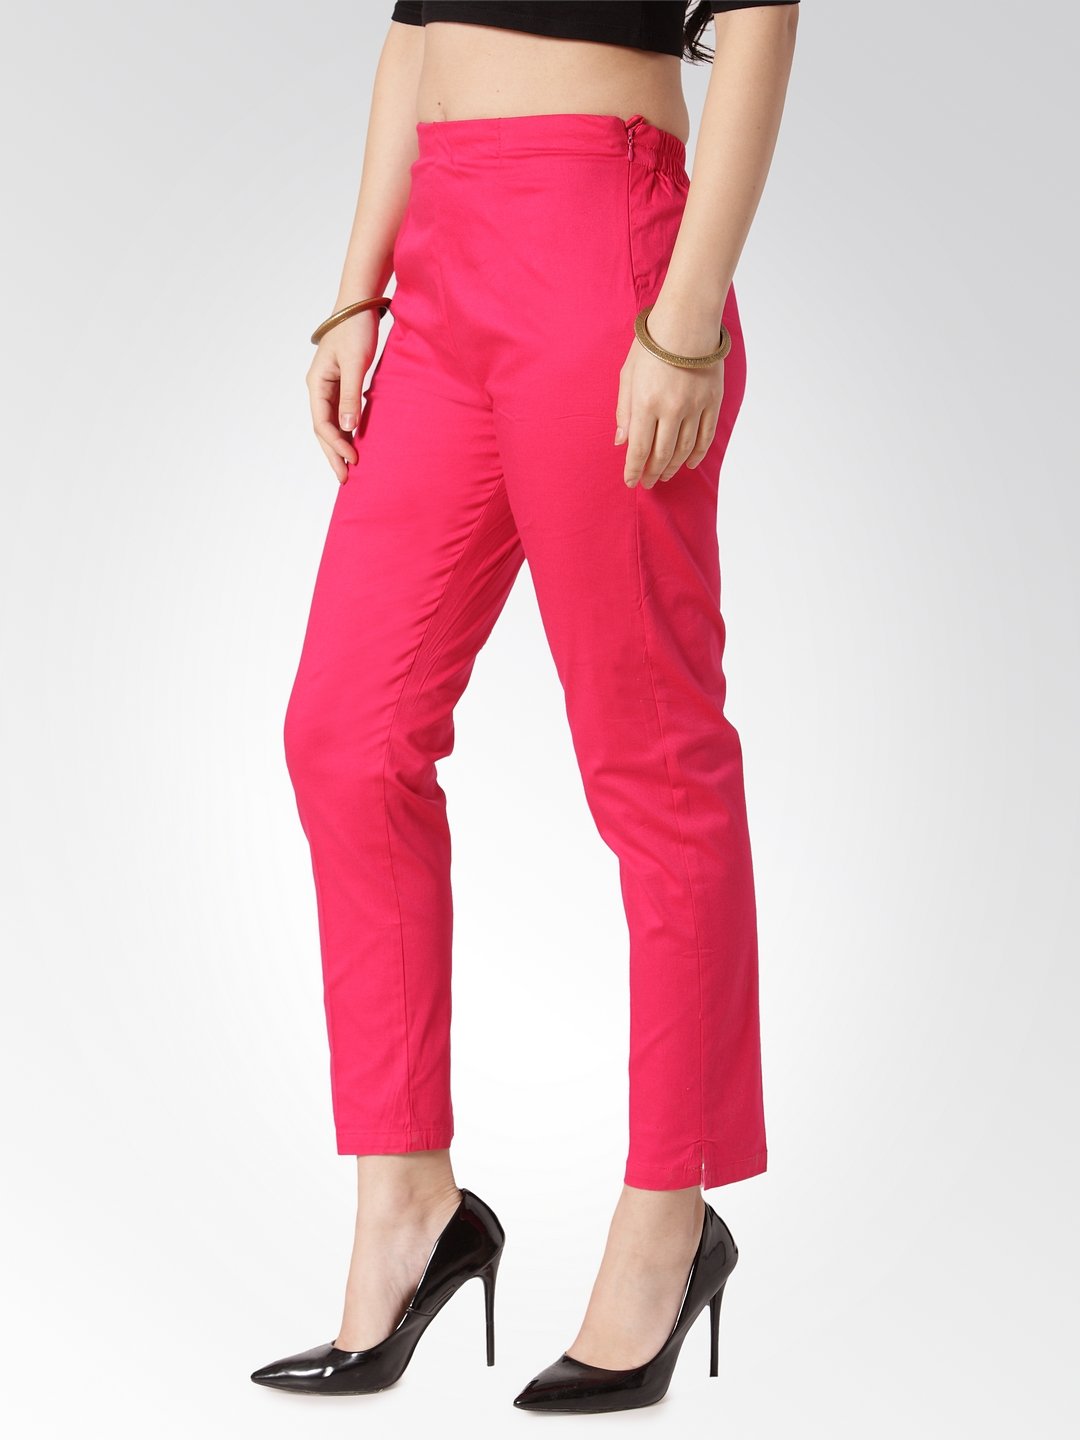 Jompers Women Pink Smart Slim Fit Solid Regular Trousers - Distacart